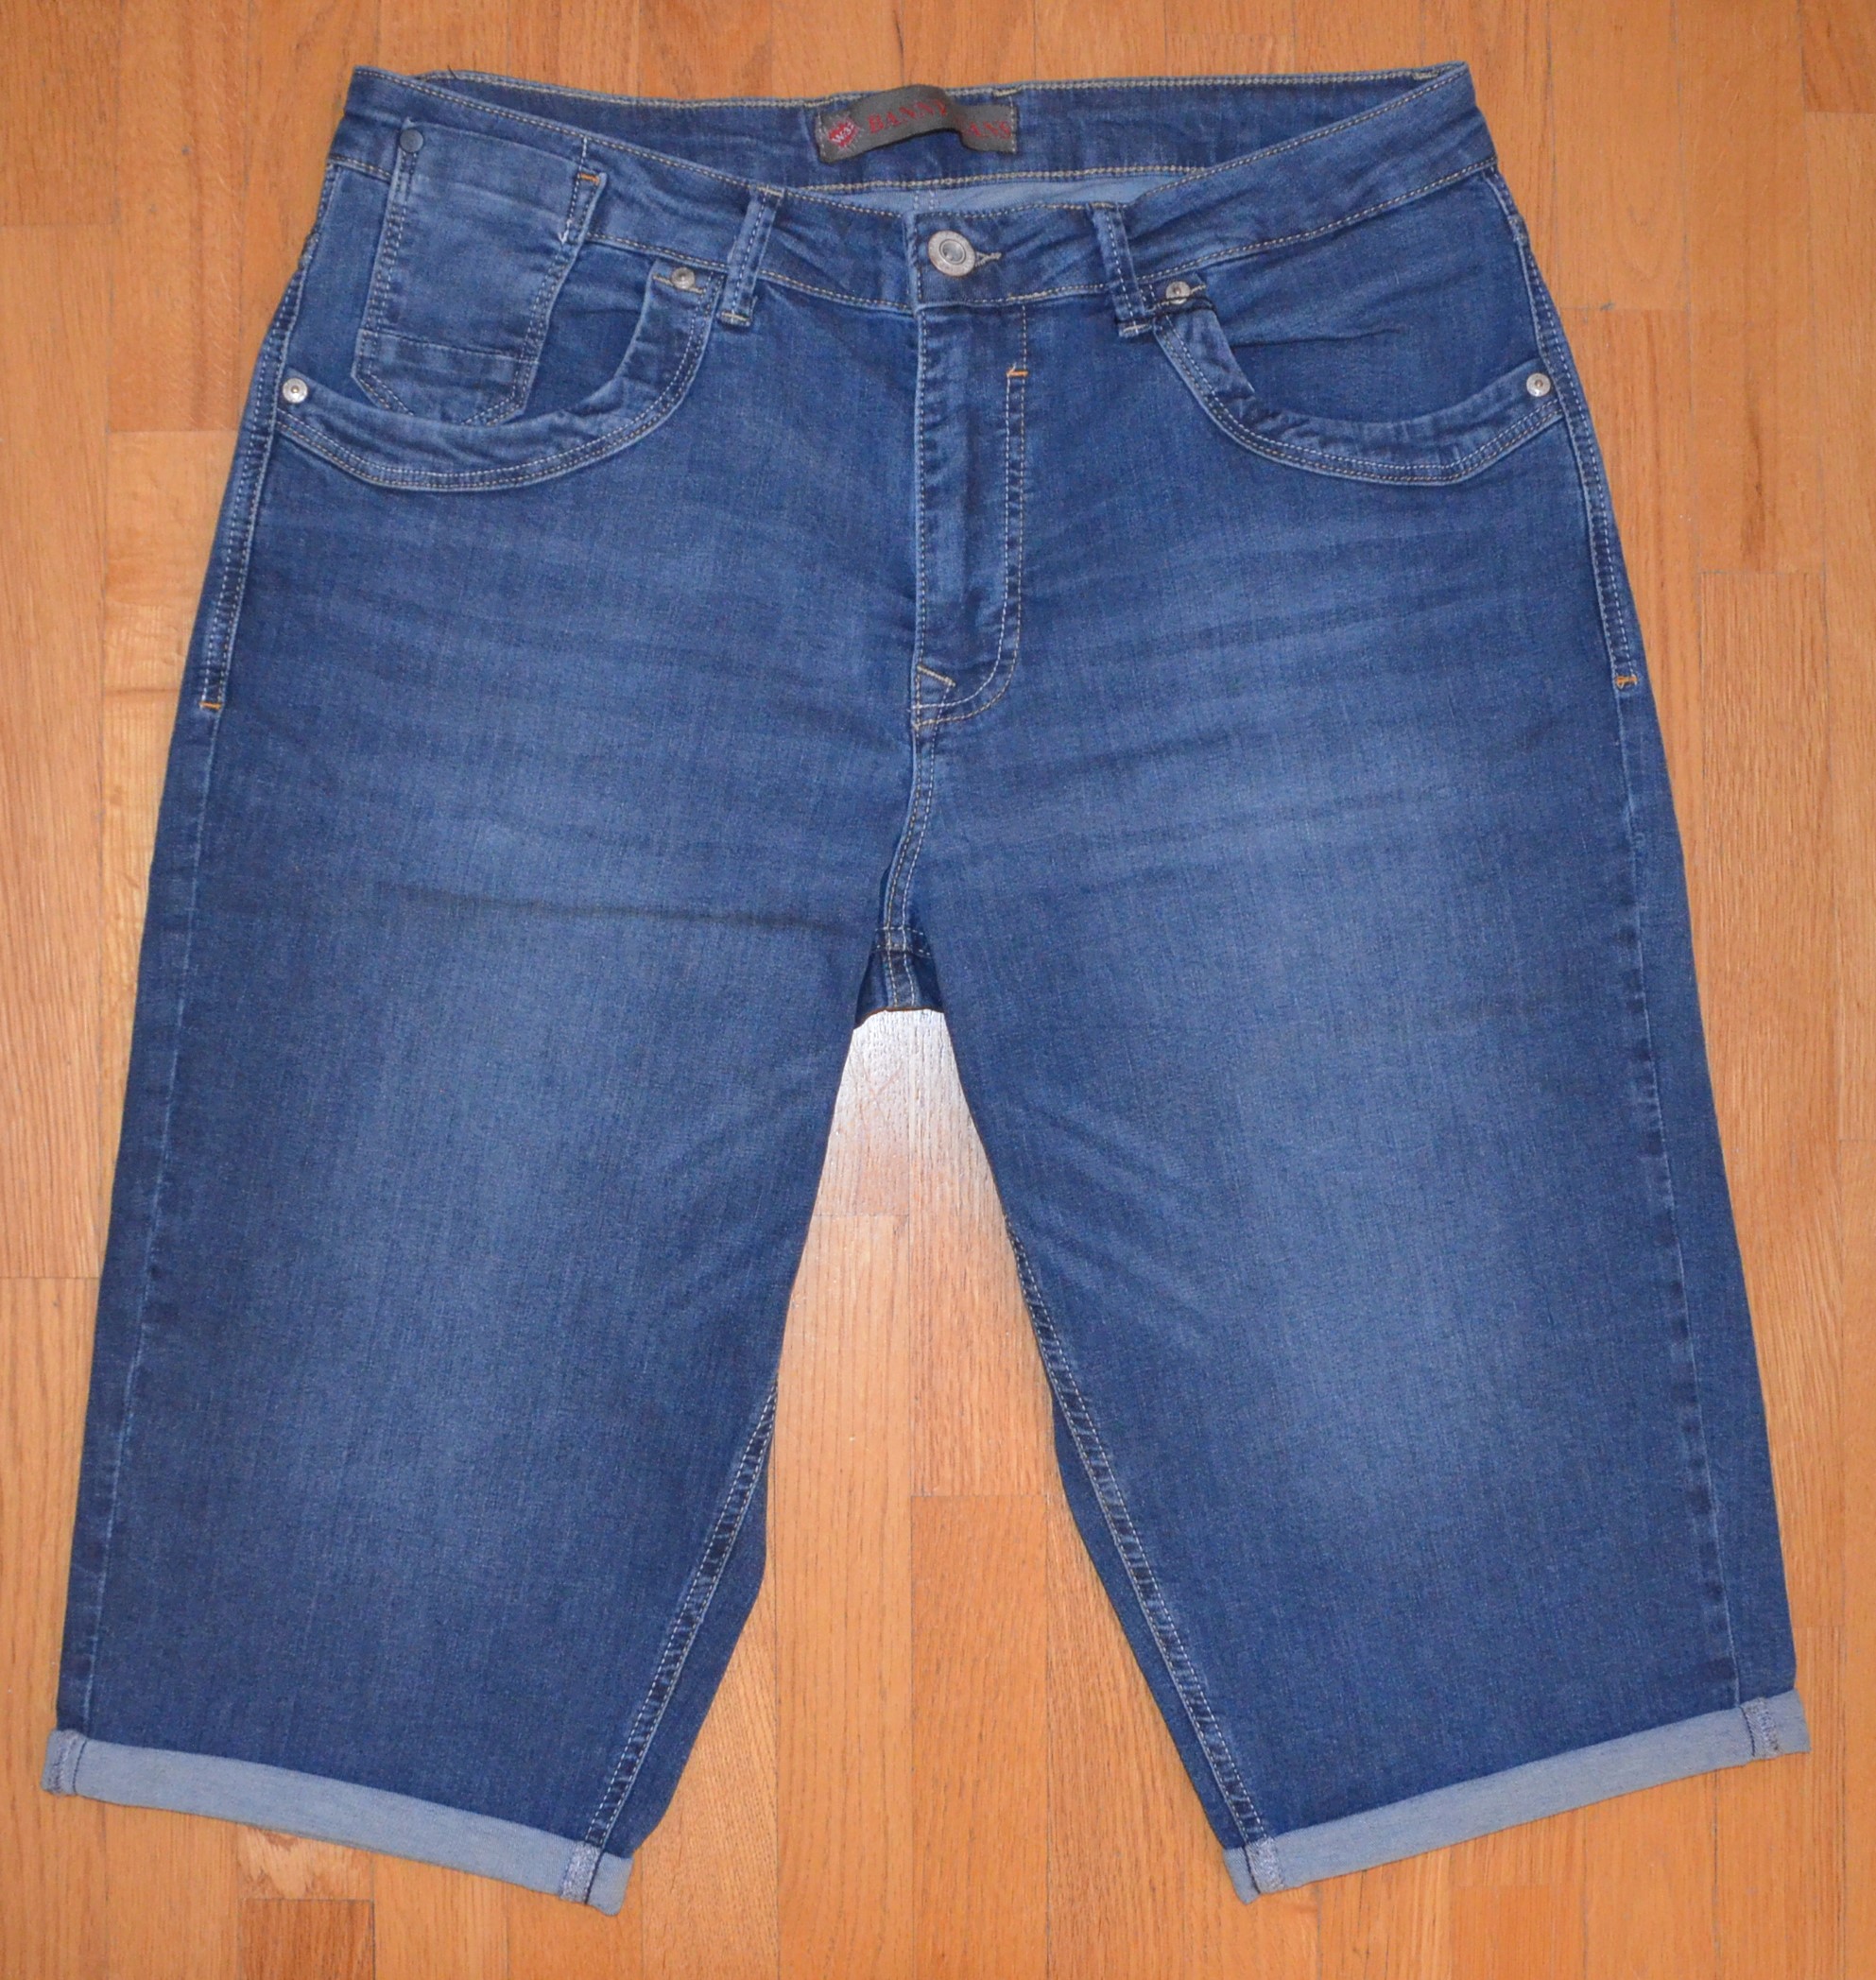 Pánské džínové šortky Banny Jeans P-2706 Velikost: 36